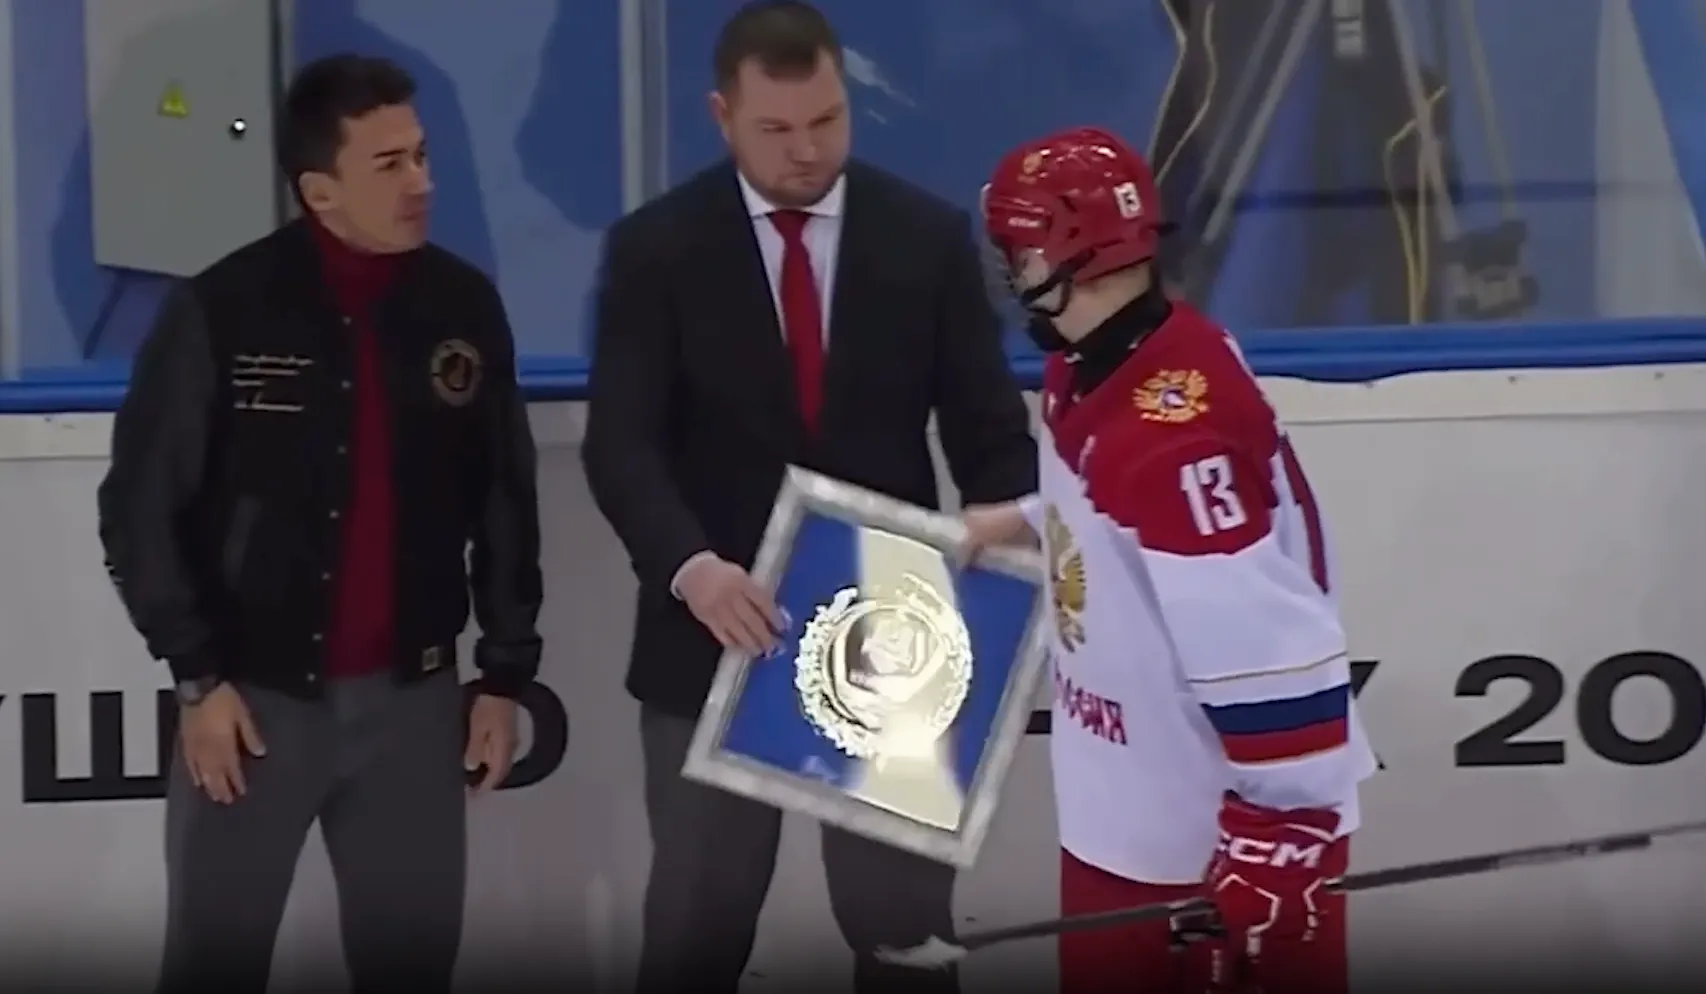 Хоккеисты-юниоры из РФ бросили серебряные награды на лёд в Минске, но потом извинились